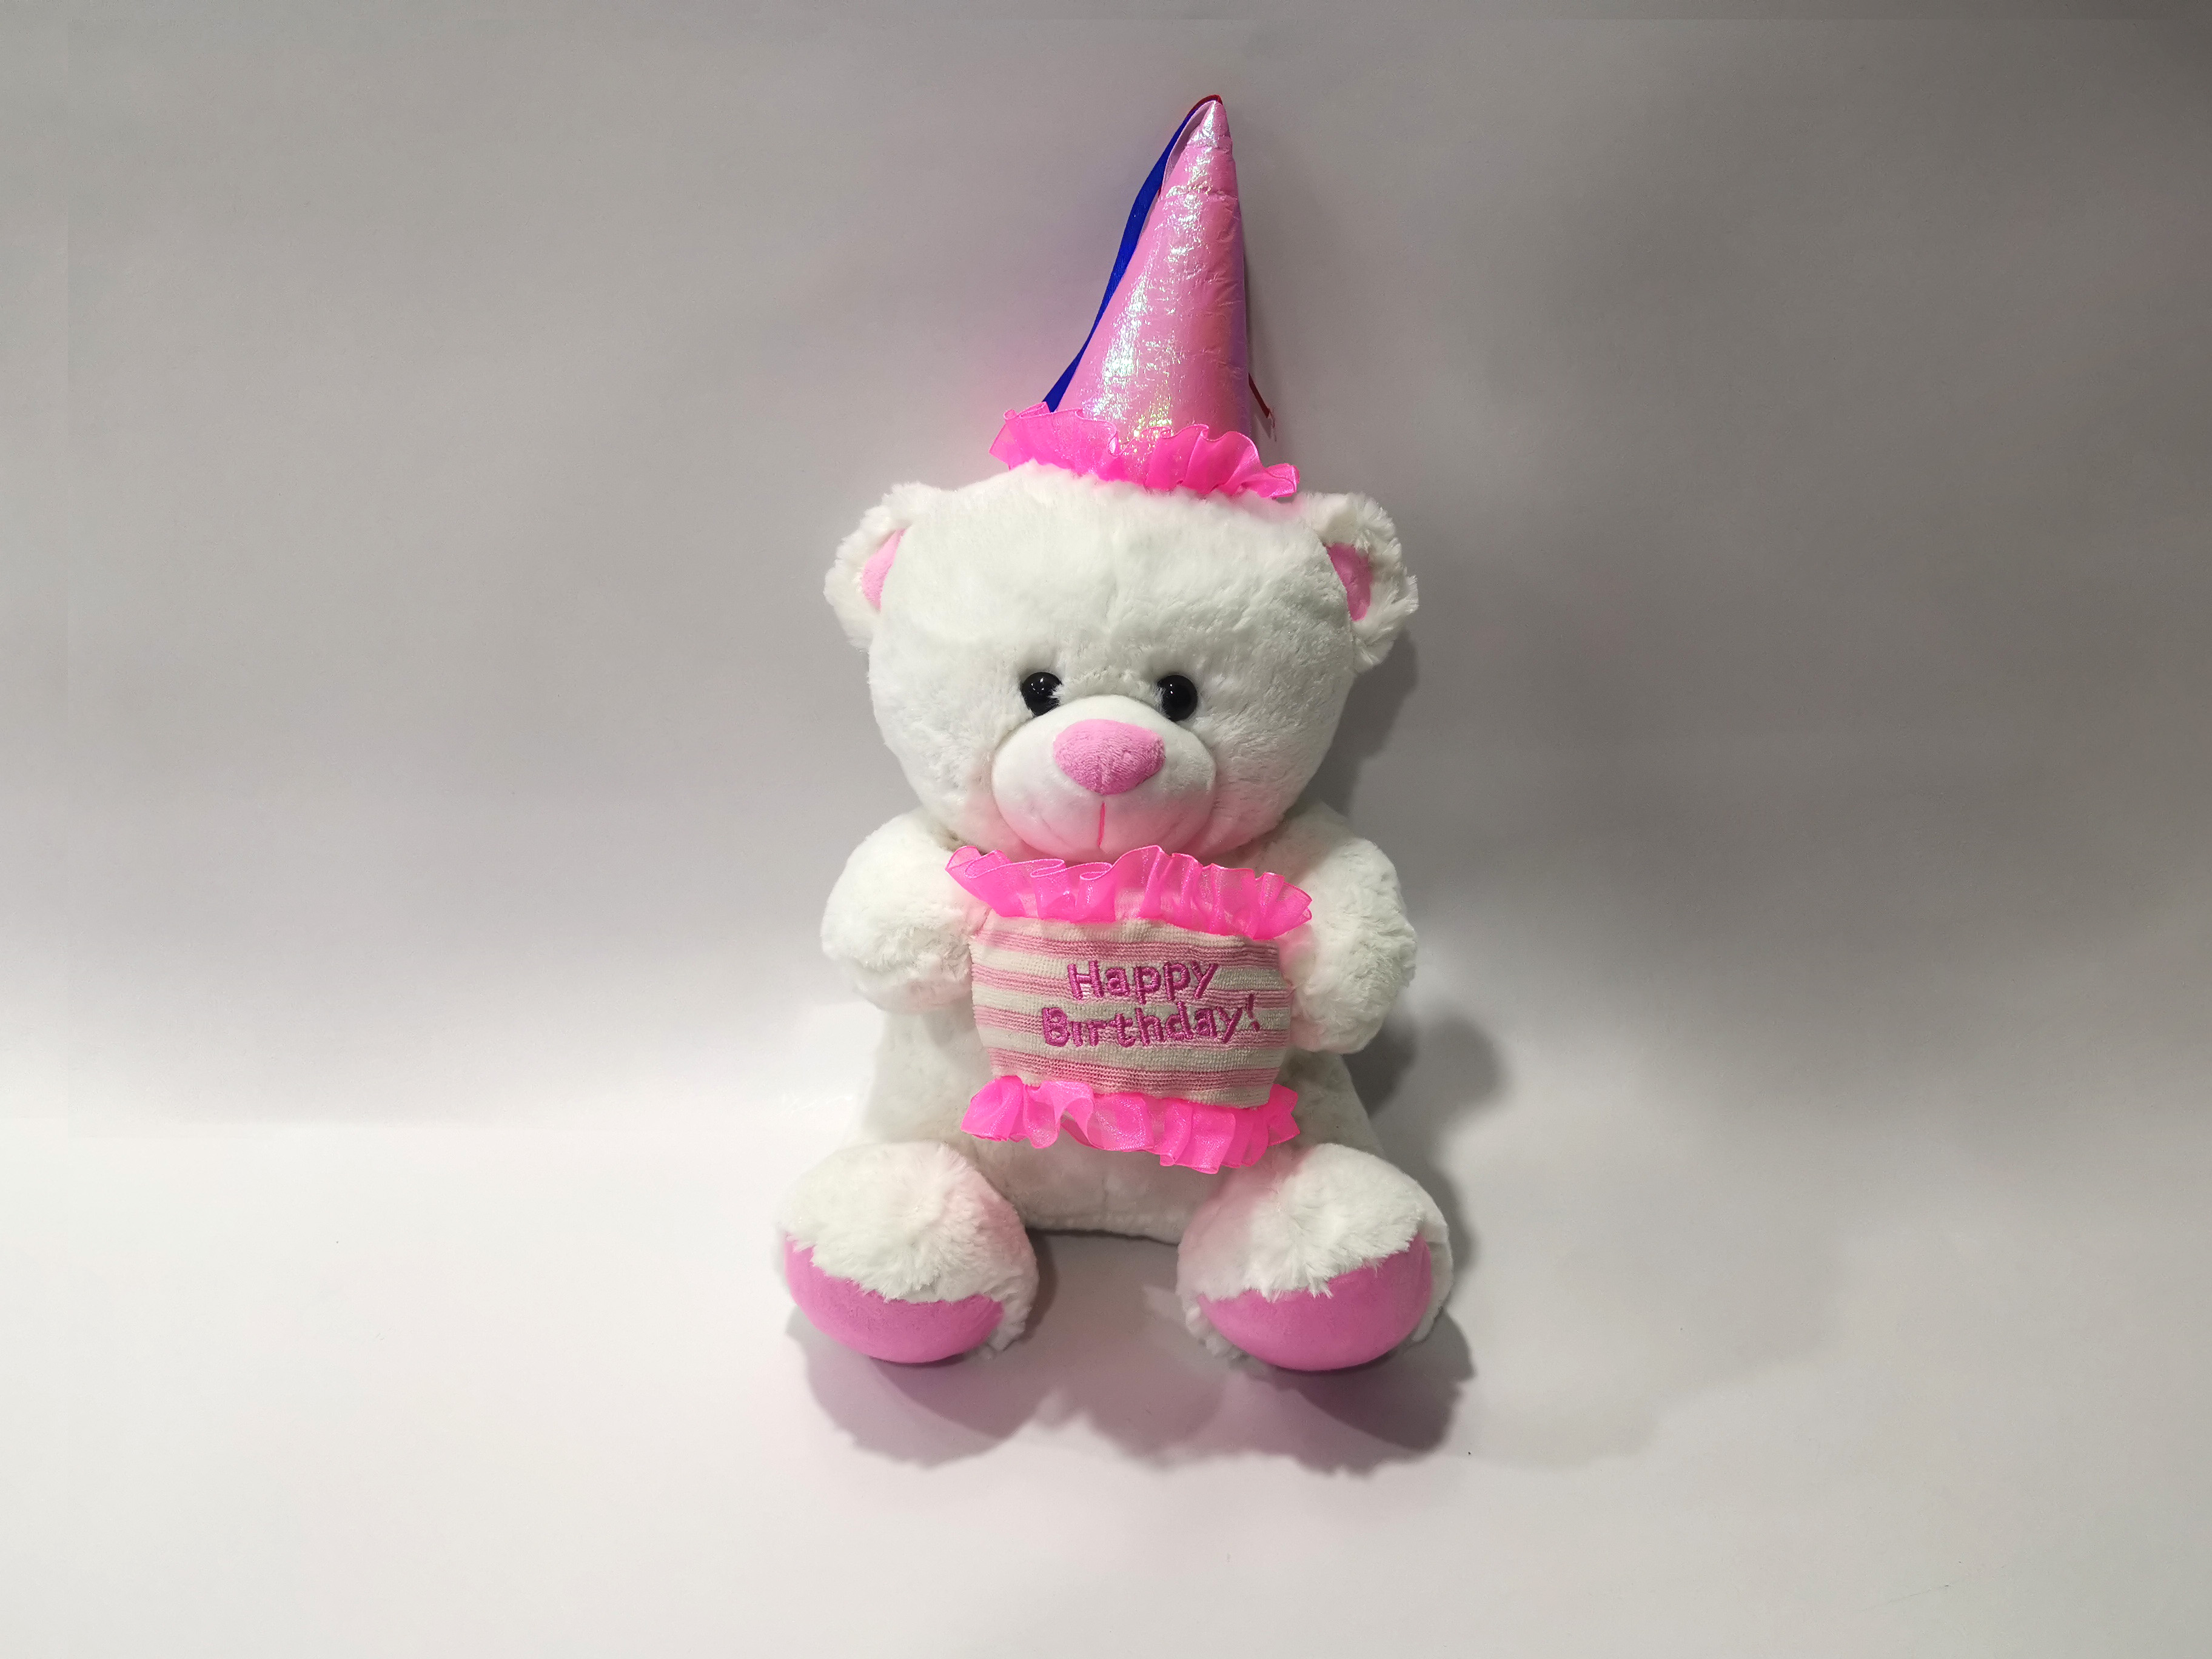 2019 Autumn New arrival : Lovely  Teddy Bear  Holding a Birthday Cake